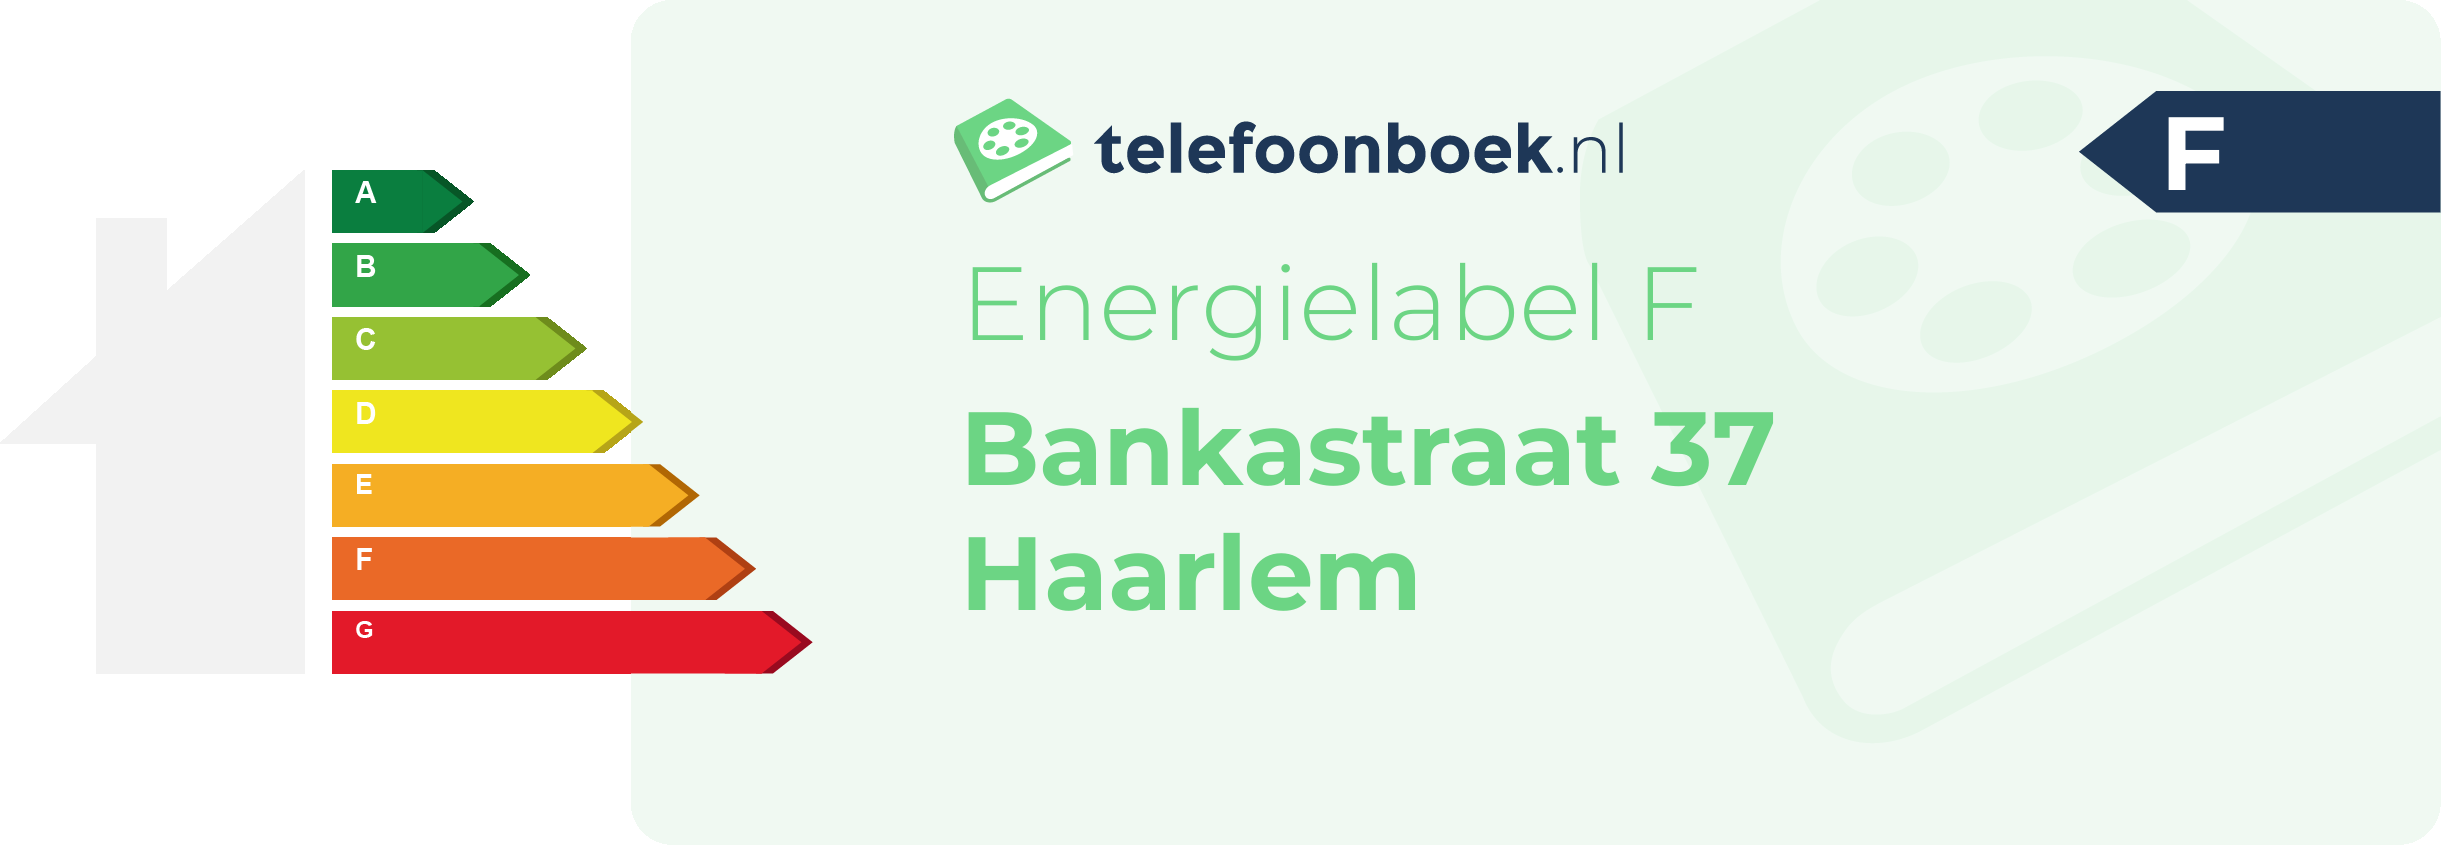 Energielabel Bankastraat 37 Haarlem